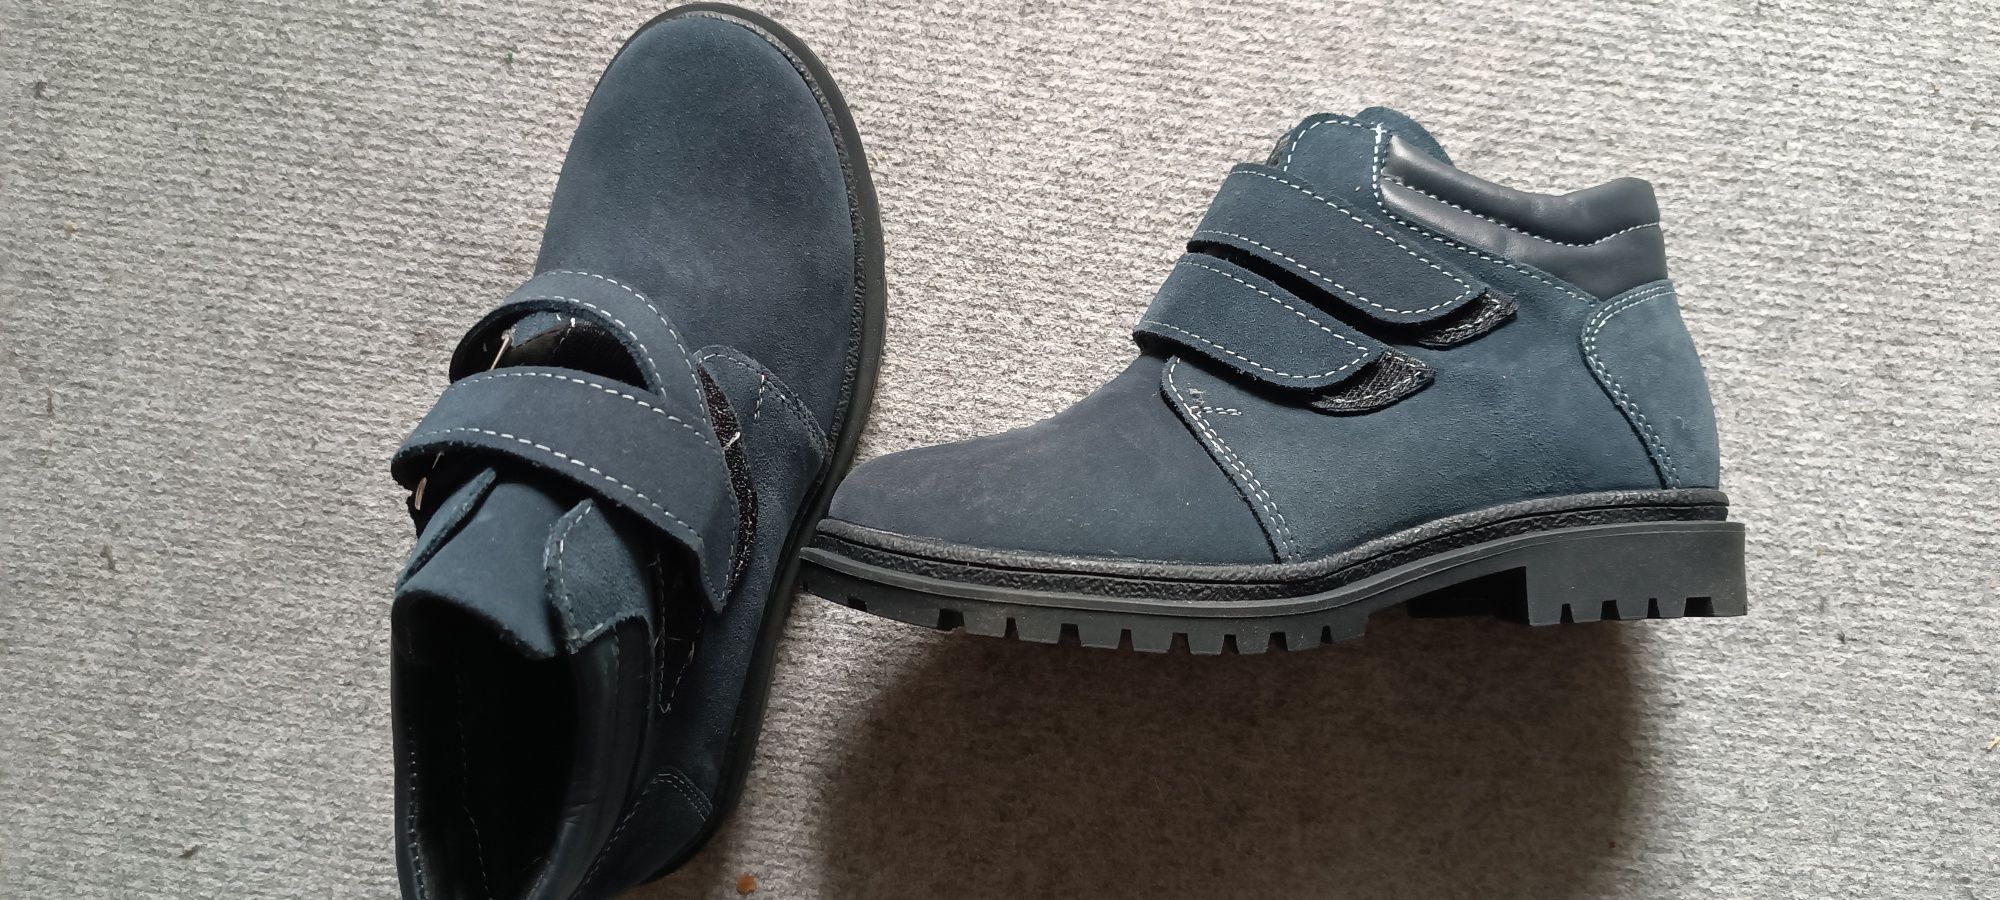 Зимние сапоги ботинки для мальчика